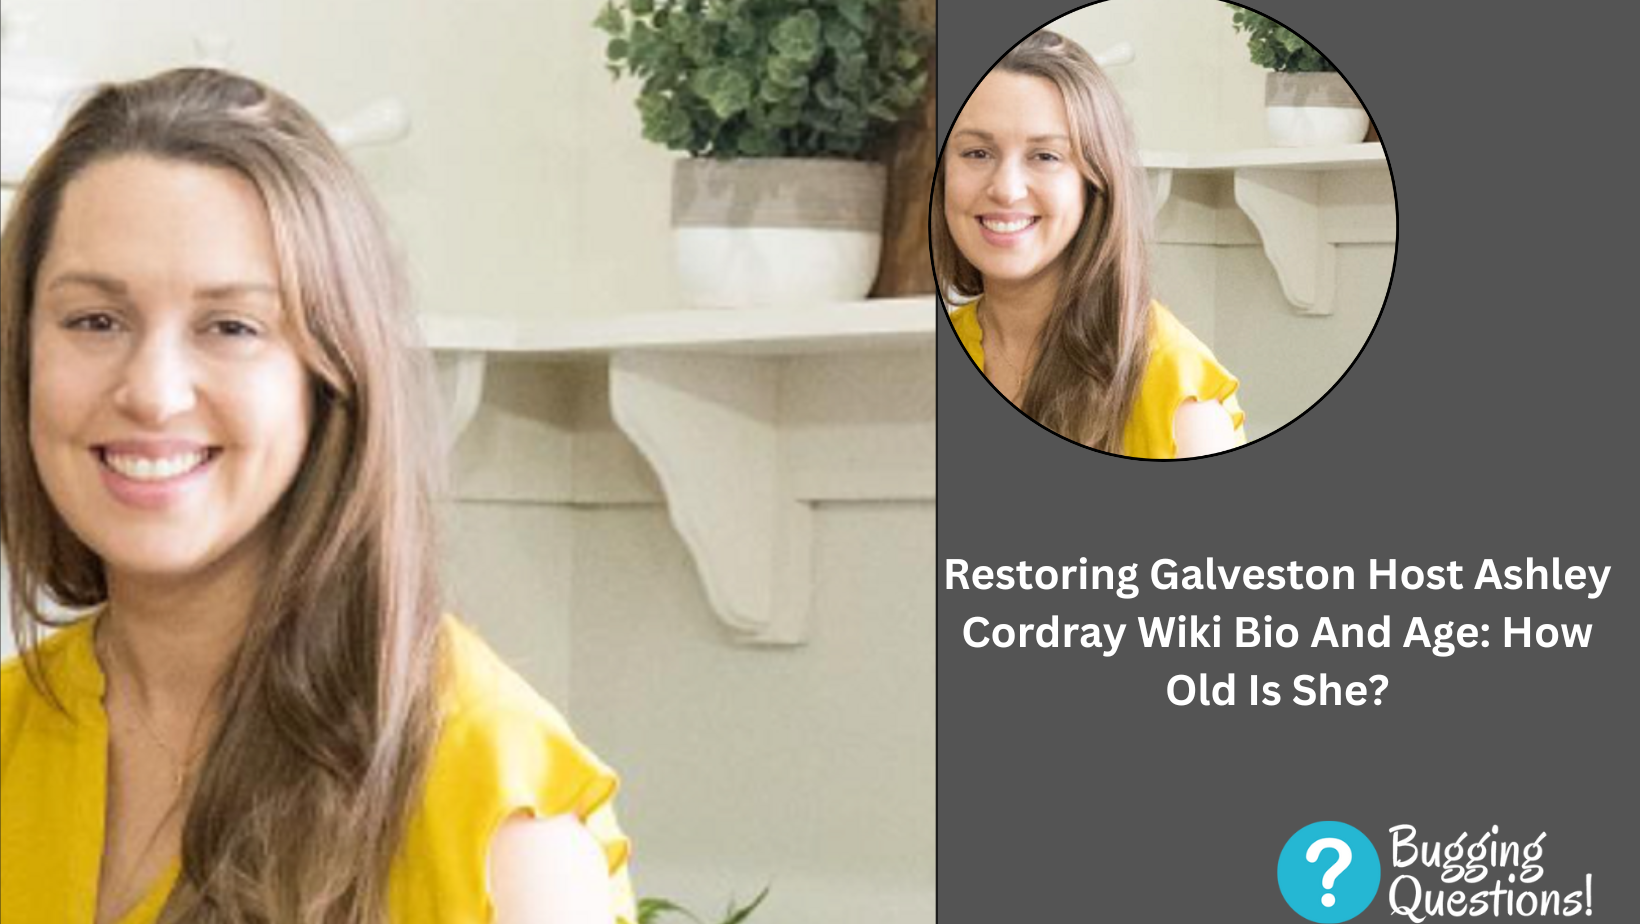 Restoring Galveston Host Ashley Cordray Wiki Bio And Age